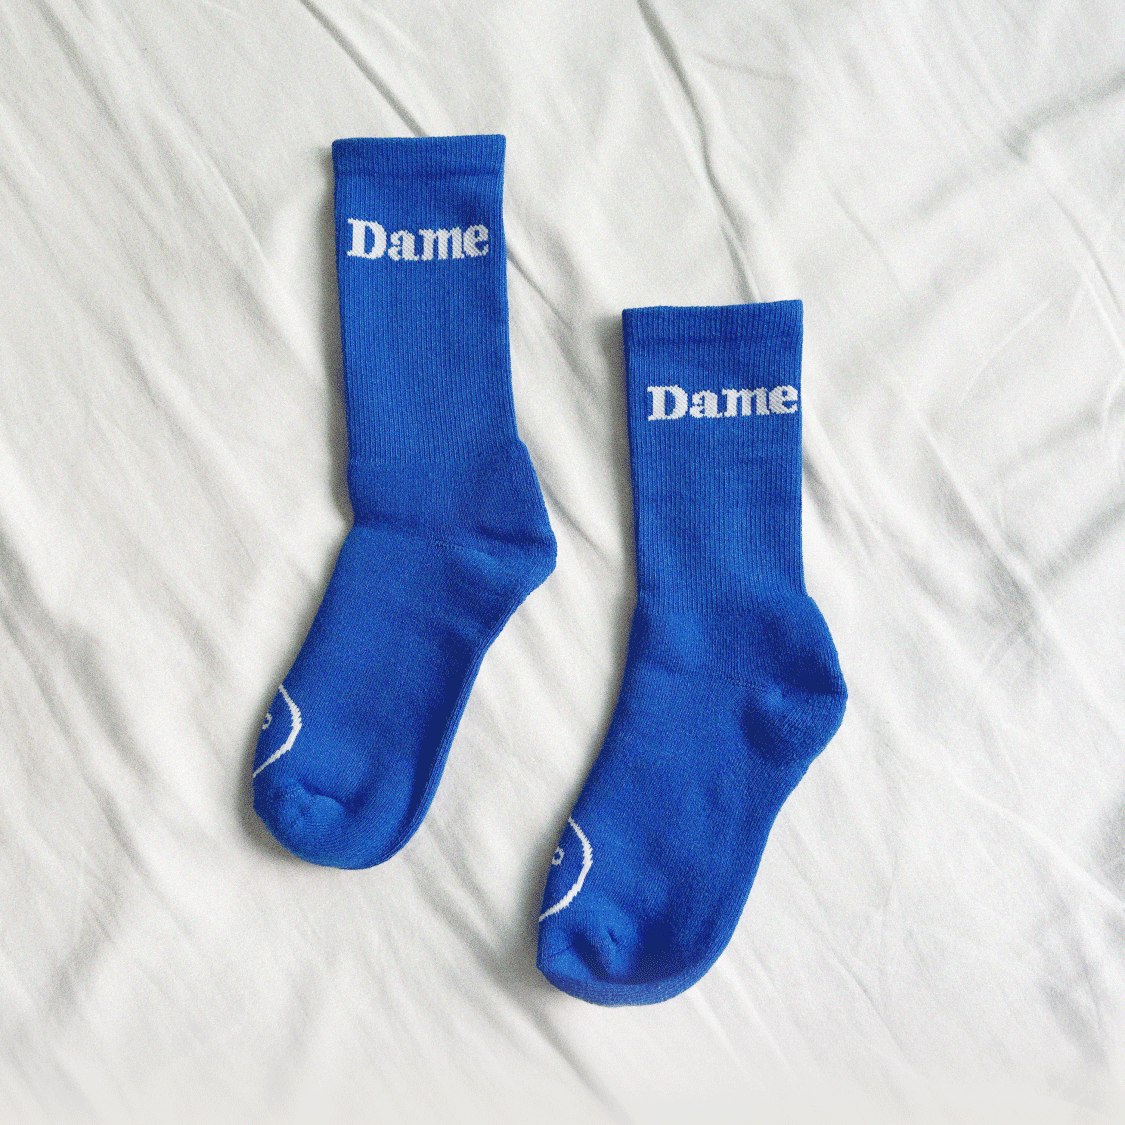 Dame Socks